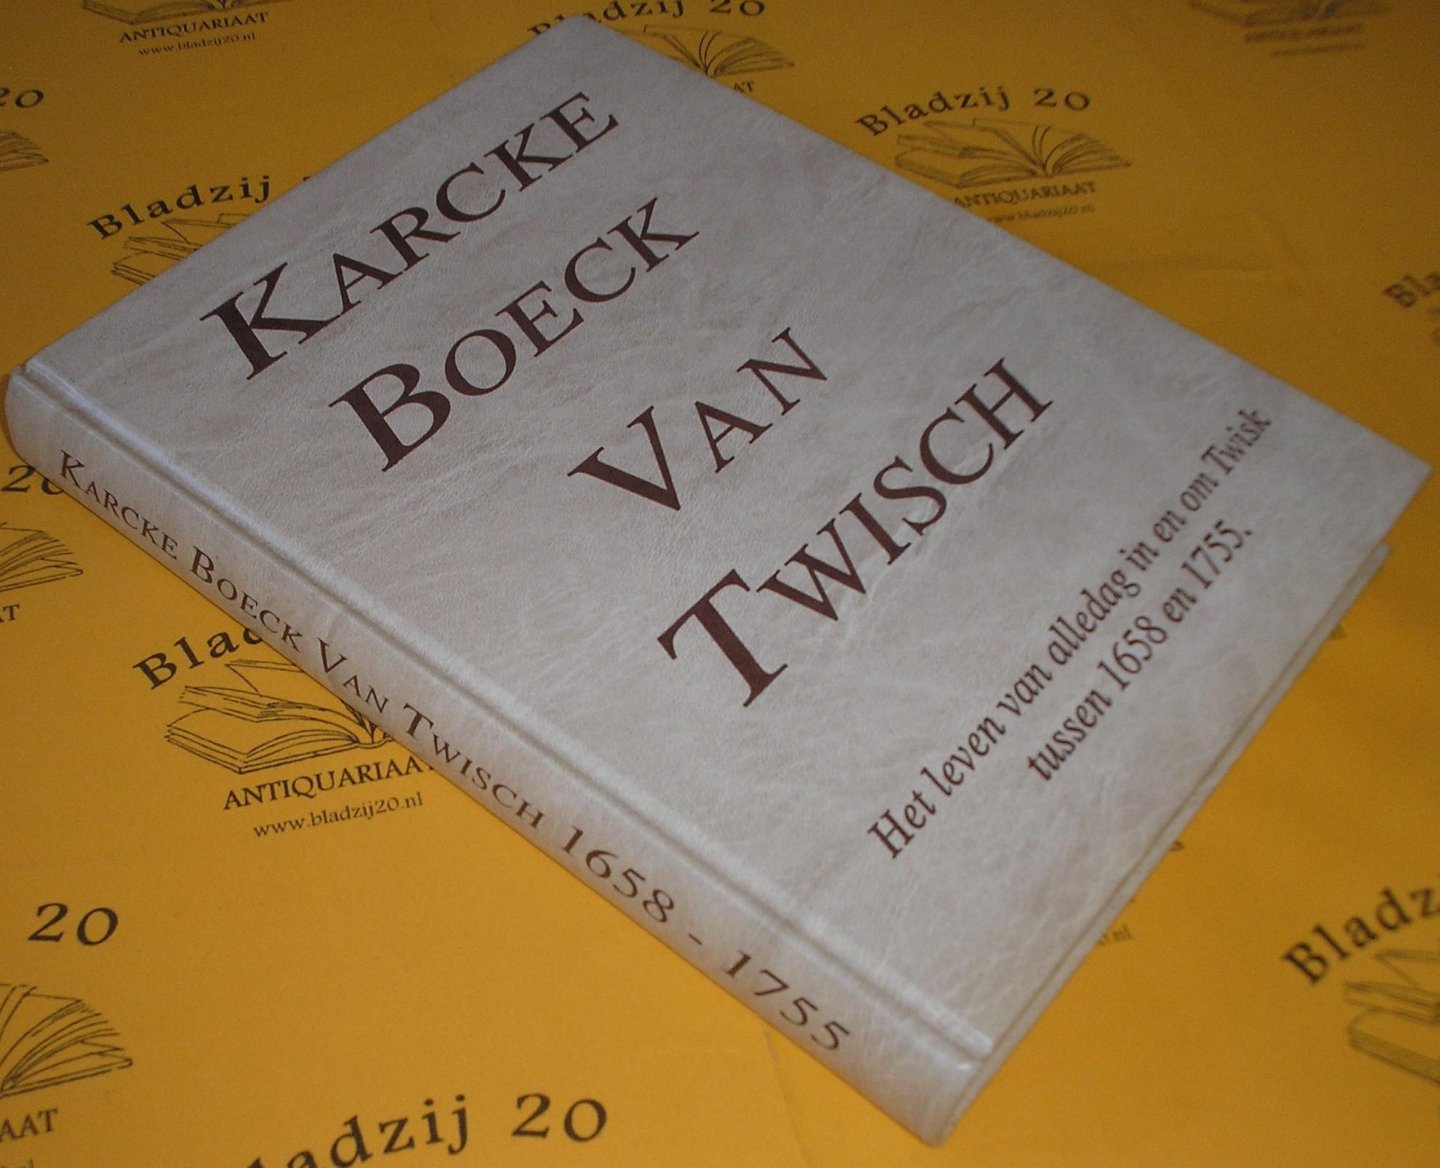 Abma, M.J.Ch. e.a. - Karcke Boeck van Twisch. Het leven van alledag in en om Twisk tussen 1658 en 1755., zolas weergegeven in oude notulen, verslagen en aantekeningen. Manuscriptie van het oorspronklijke Karckeboeck van Twisch.